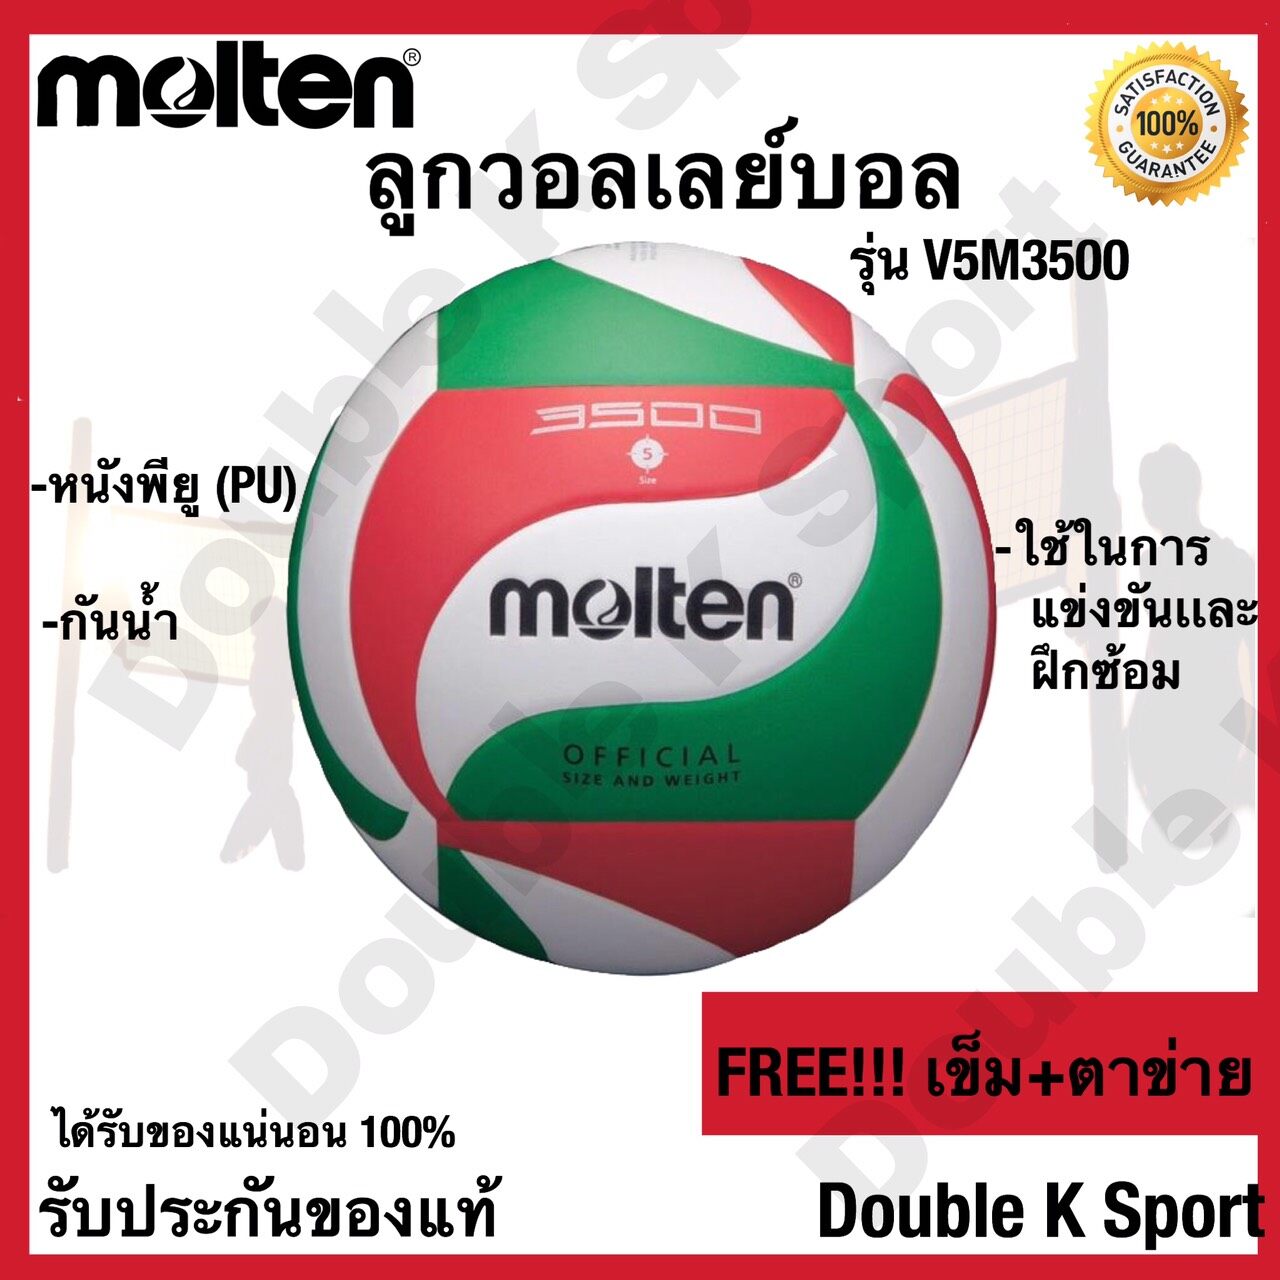 วอลเลย์บอล ลูกวอลเลย์บอล Molten รุ่น V5M3500 หนังพียู ของแท้ 100%